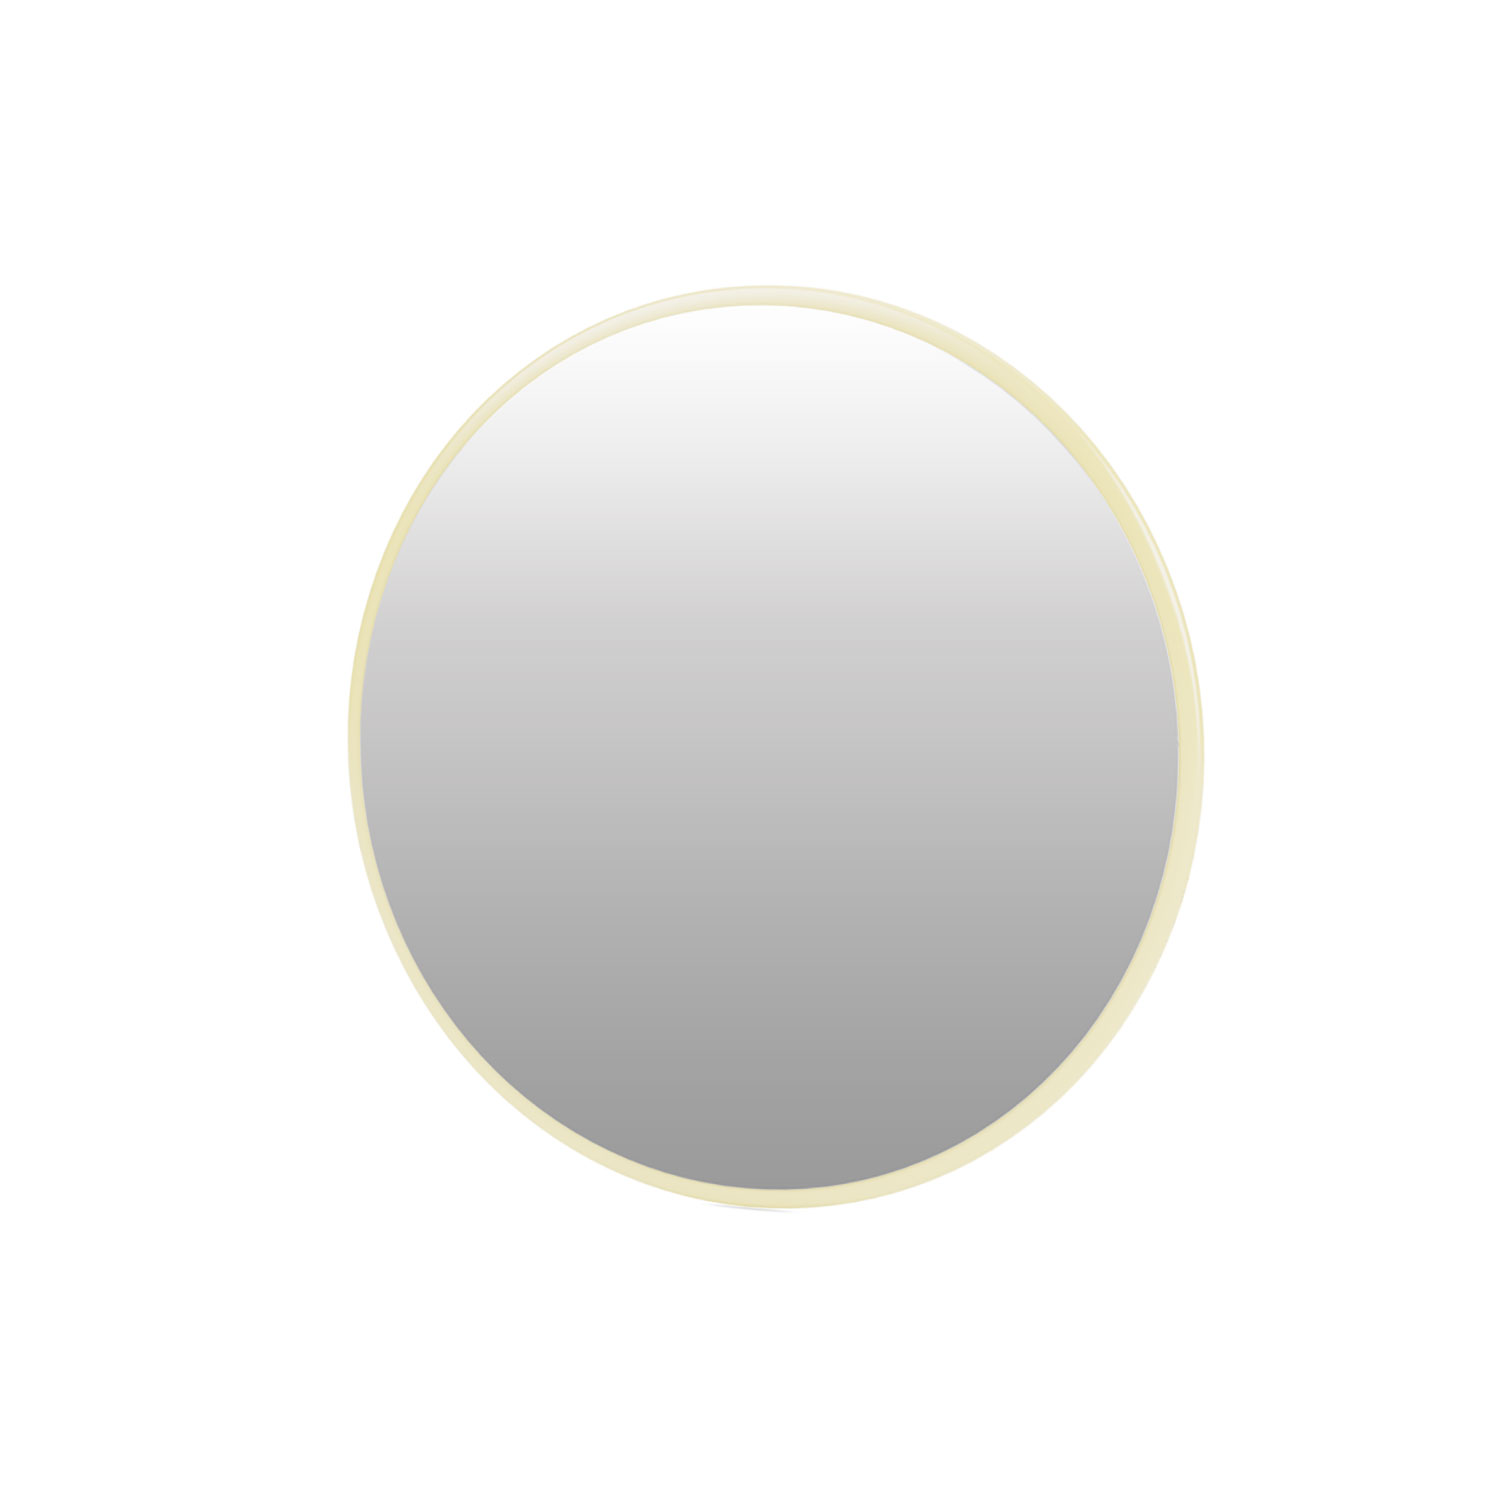 Mini MCI round mirror, Camomile